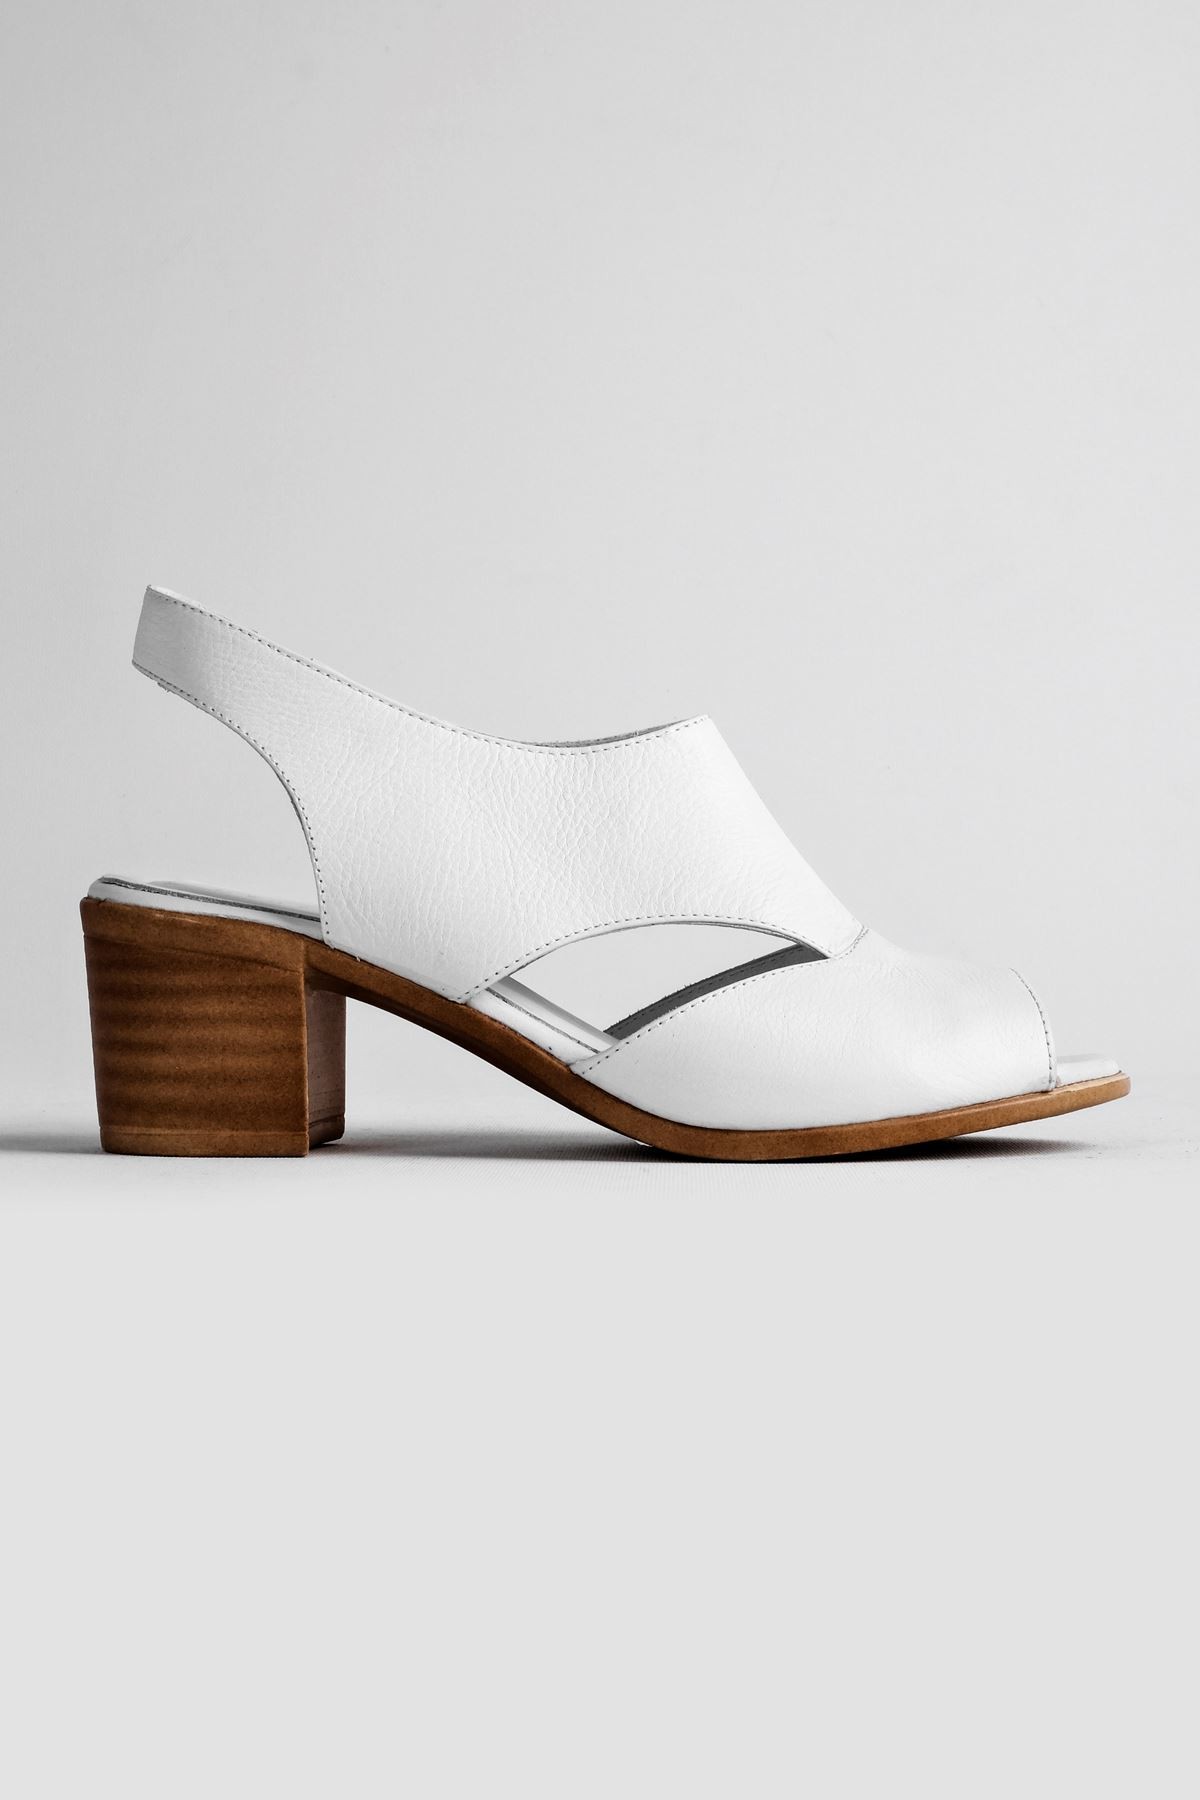 Breda Kadın Hakiki Deri Topuklu Ayakkabı (B2119 ) - Beyaz